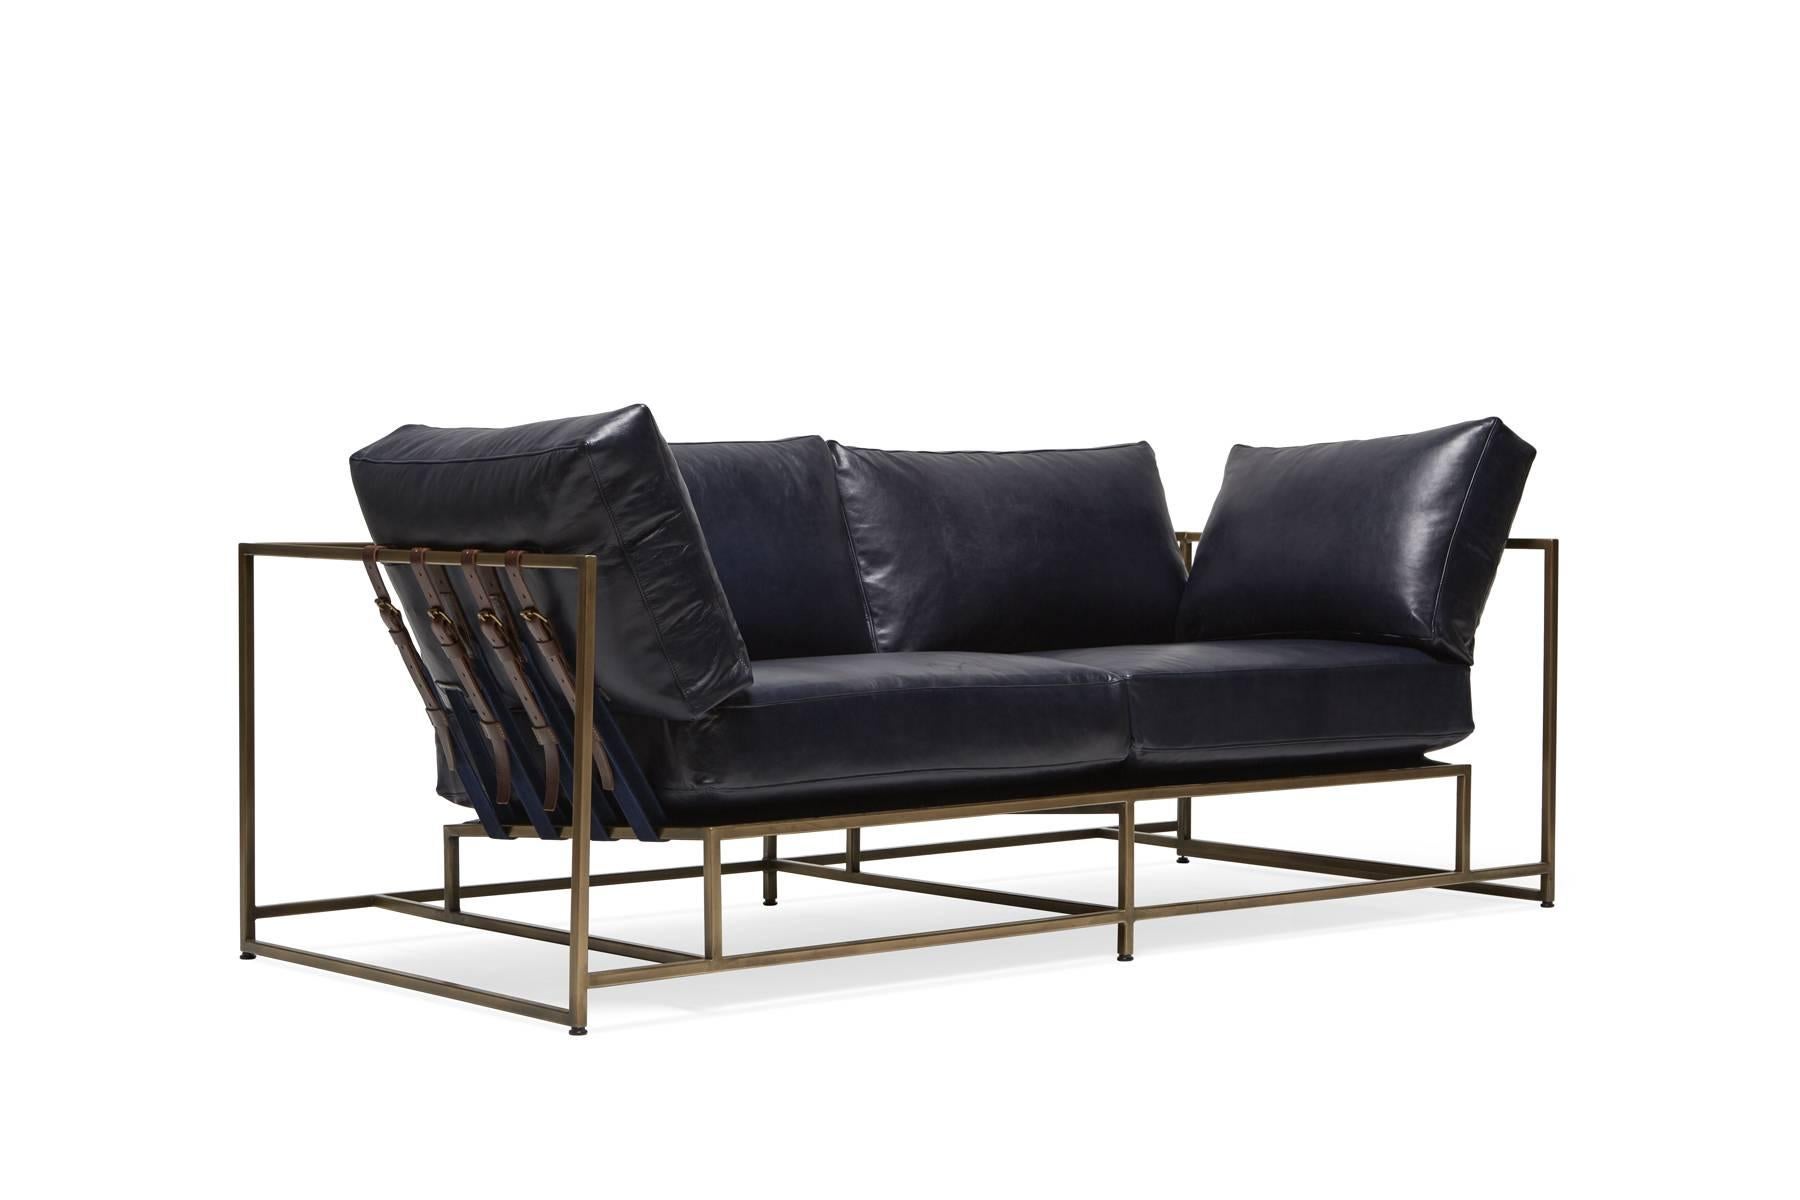 Diese neue Ergänzung unserer Zweisitzer-Sofa-Reihe hat einen weichen Indigo-Lederbezug, indigoblaues Baumwollgewebe und ochsenblutfarbene Ledergurte sowie einen Rahmen aus antikem Messing. Die Sitzkissen haben eine Daunenhülle über dem